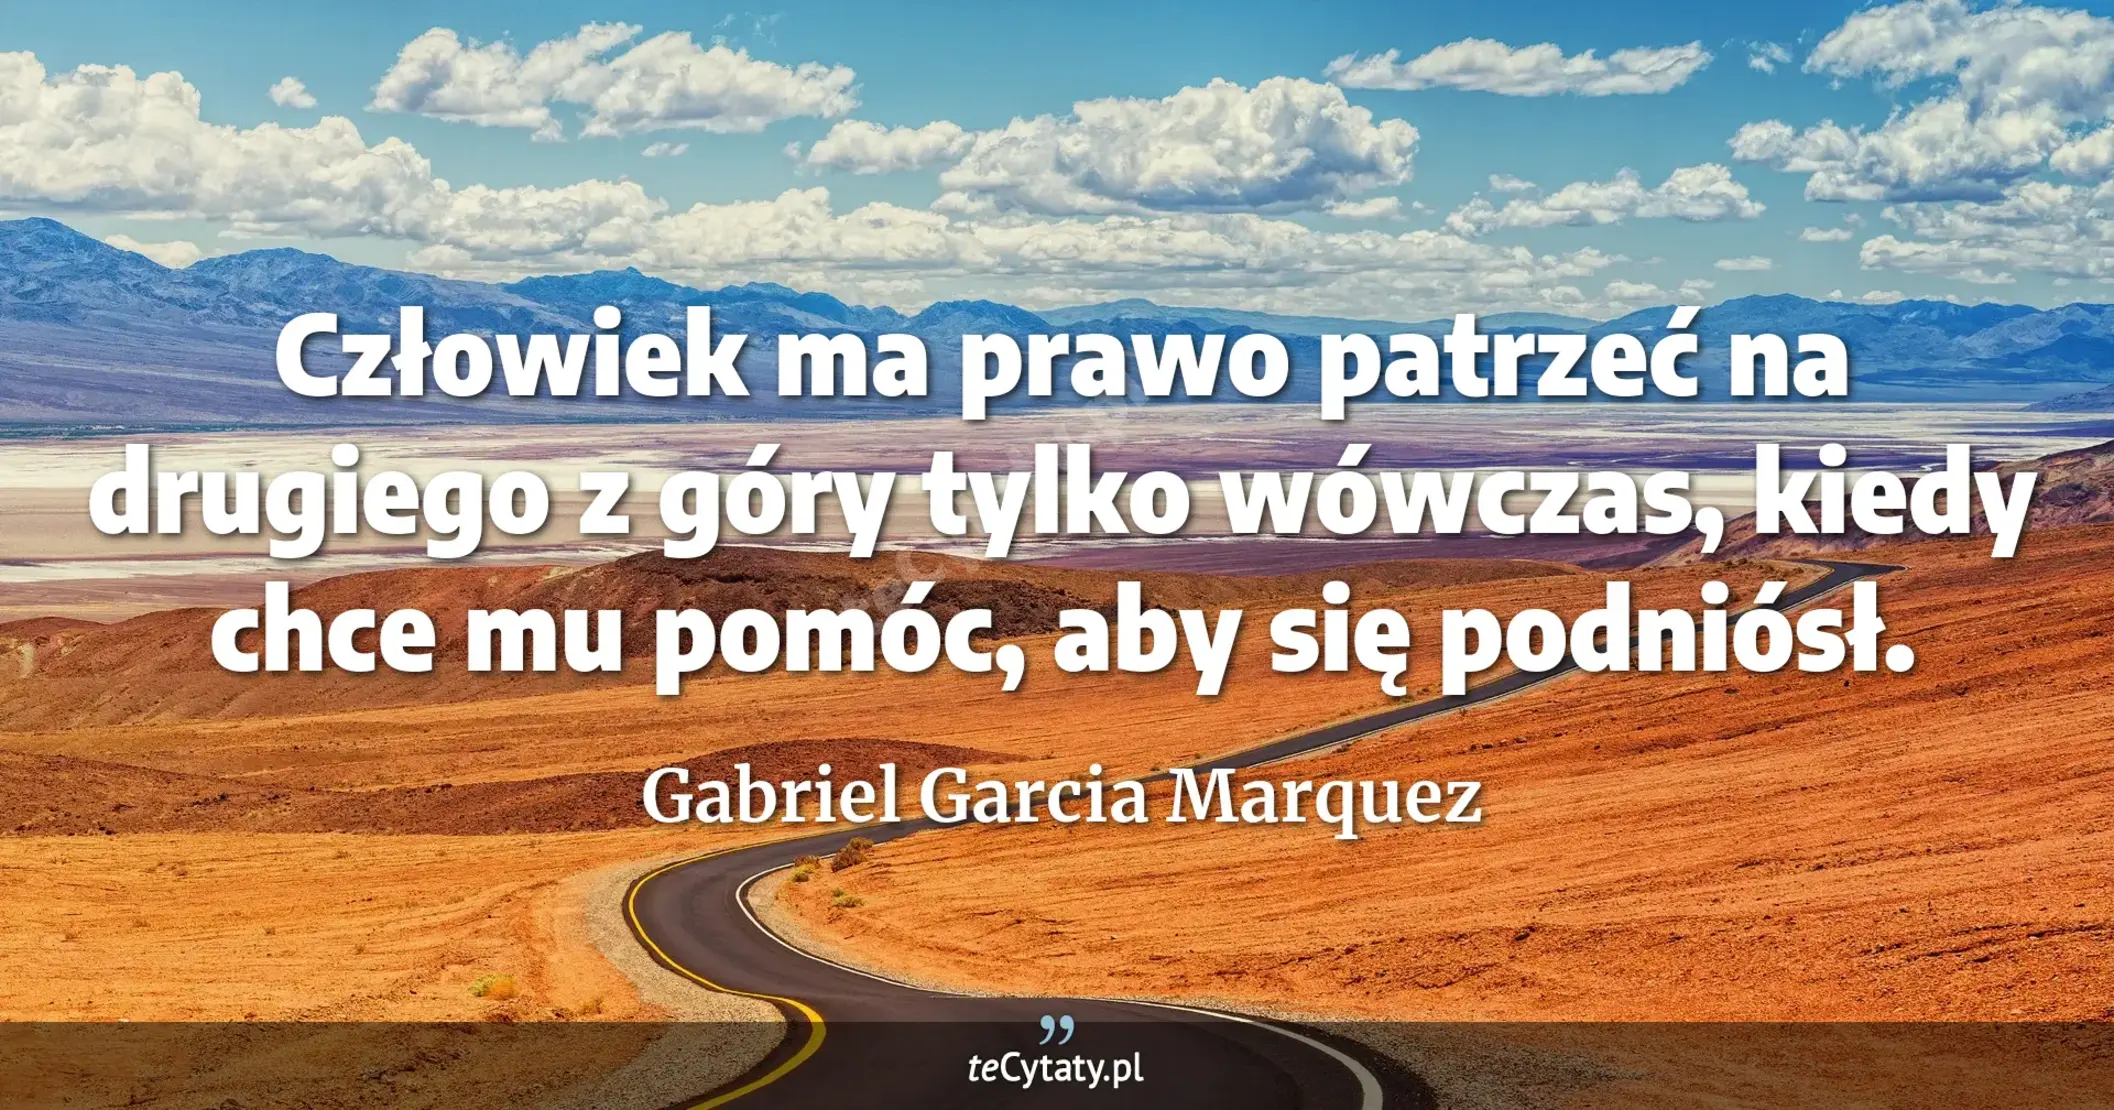 Człowiek ma prawo patrzeć na drugiego z góry tylko wówczas, kiedy chce mu pomóc, aby się podniósł. - Gabriel Garcia Marquez